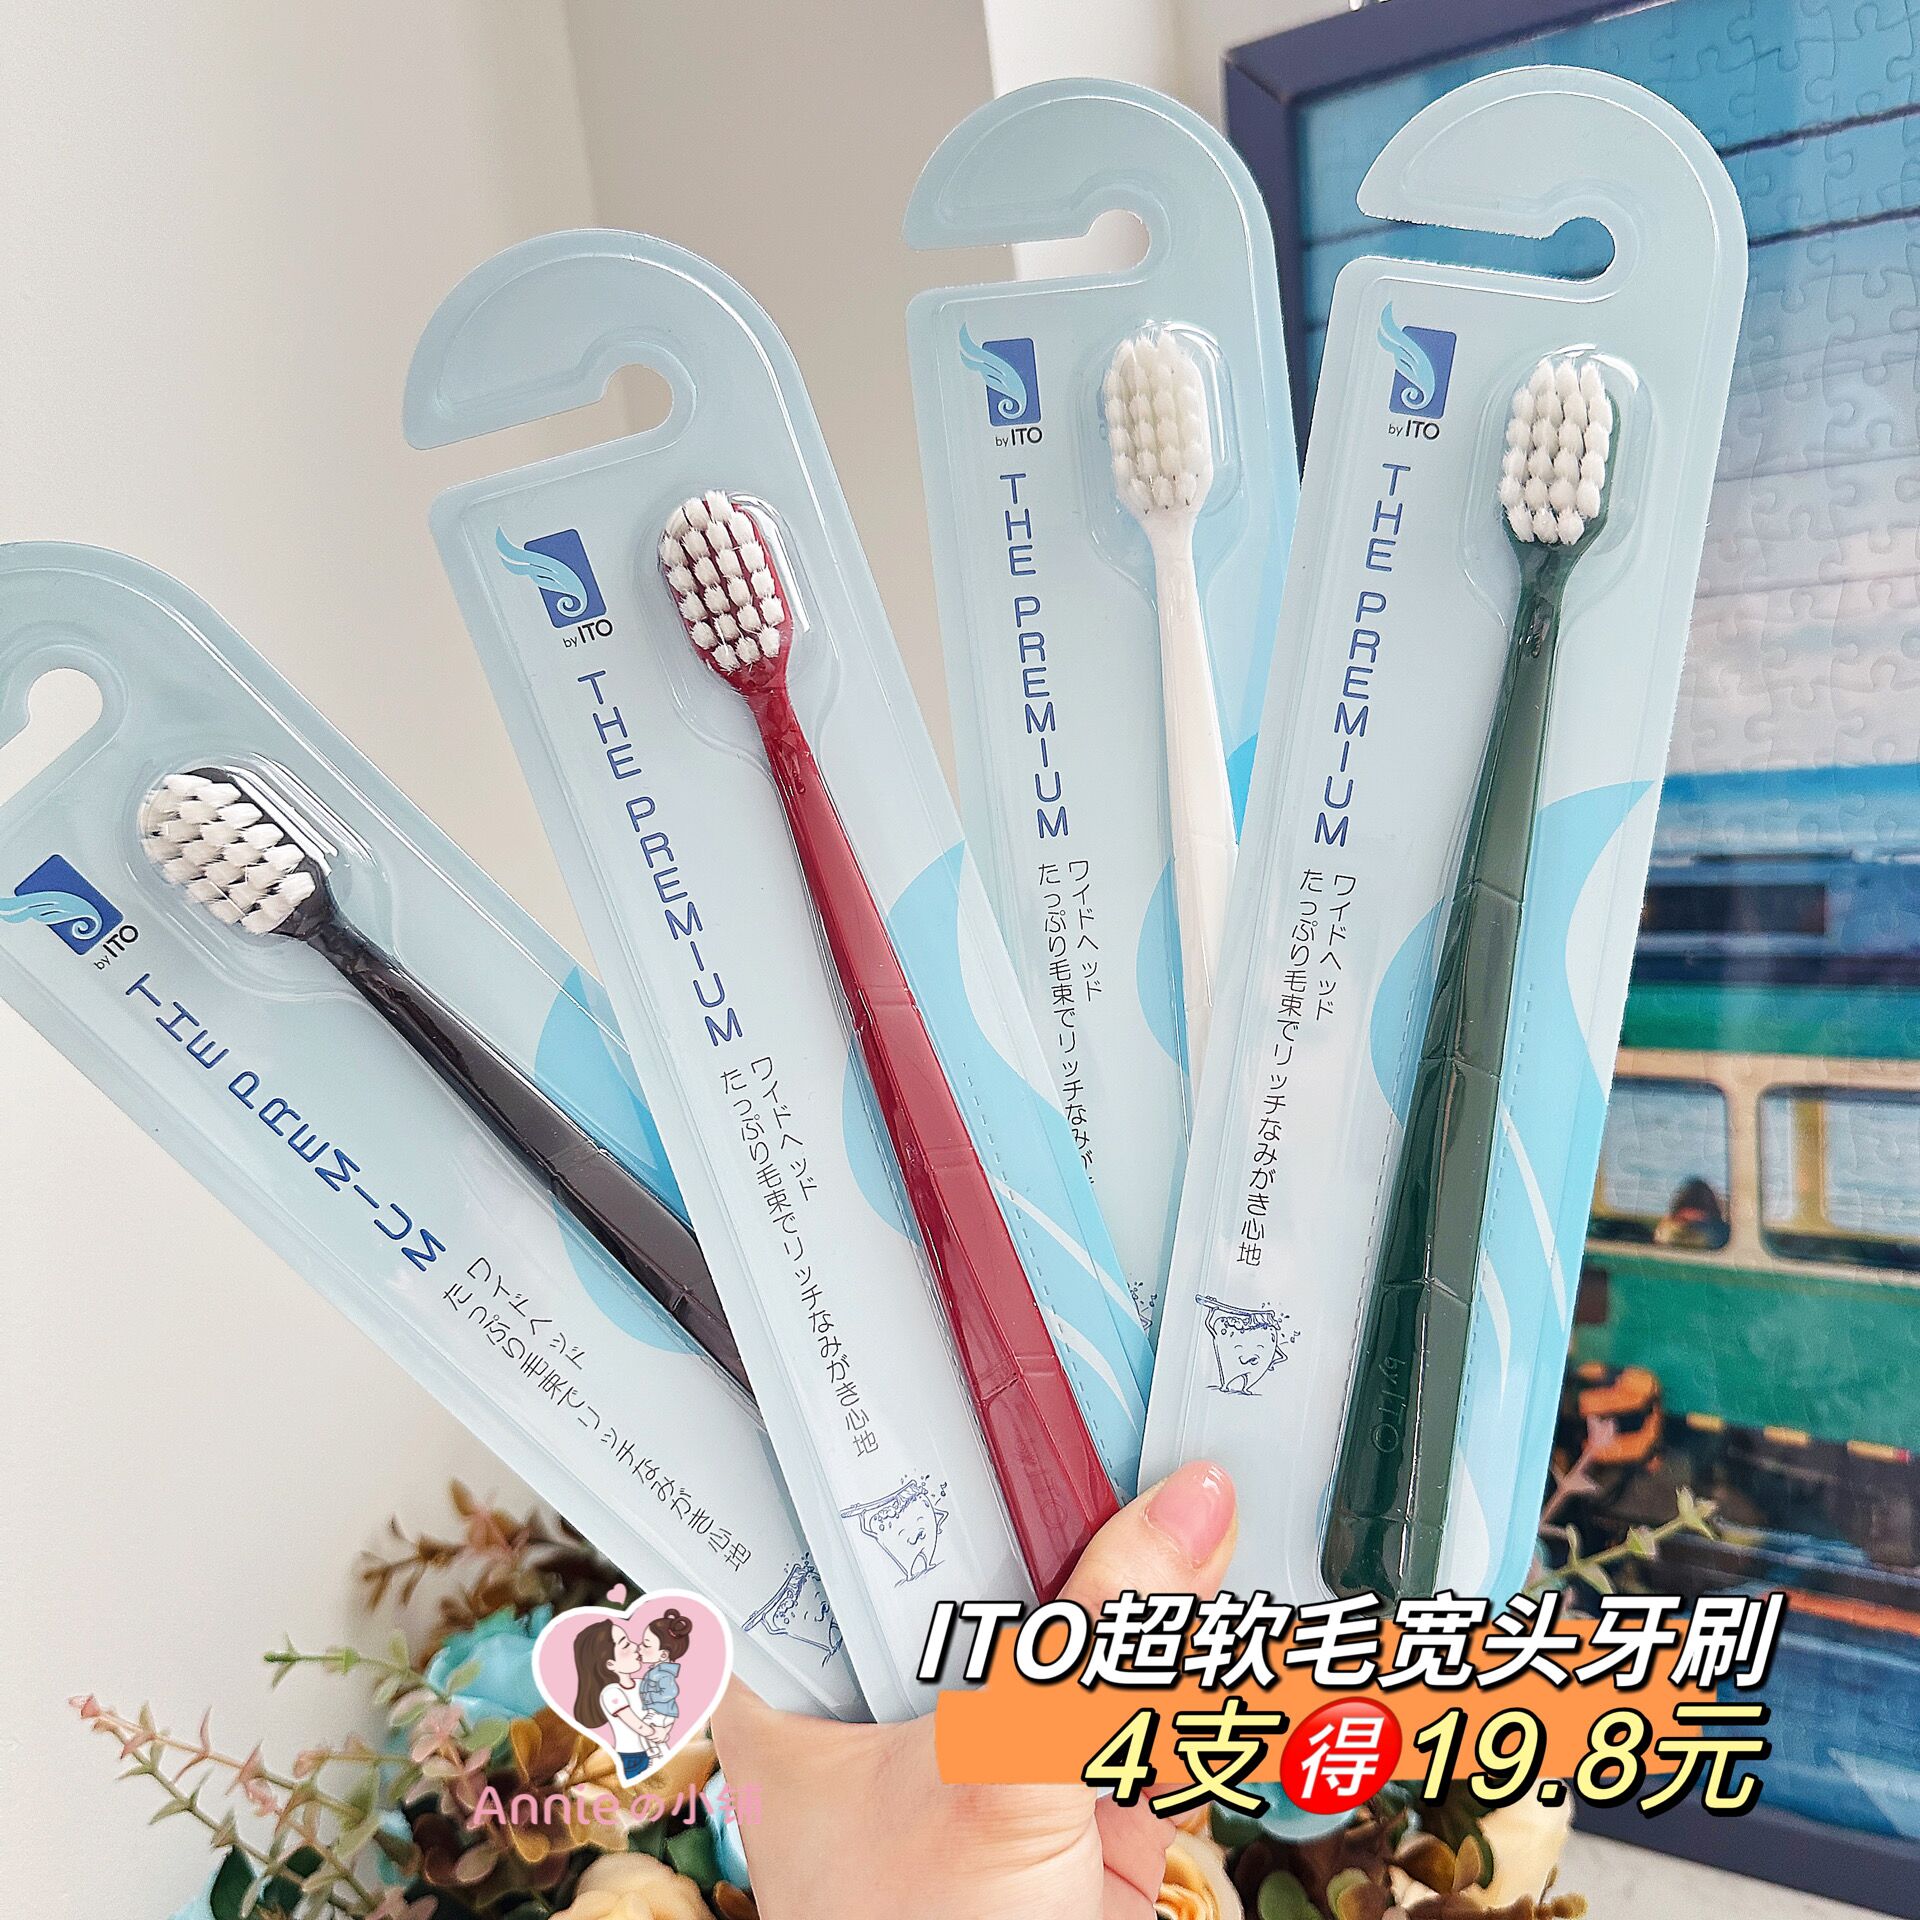 4支19.8元日本ITO艾特柔宽头牙刷高密度超软毛细毛清洁成人牙刷